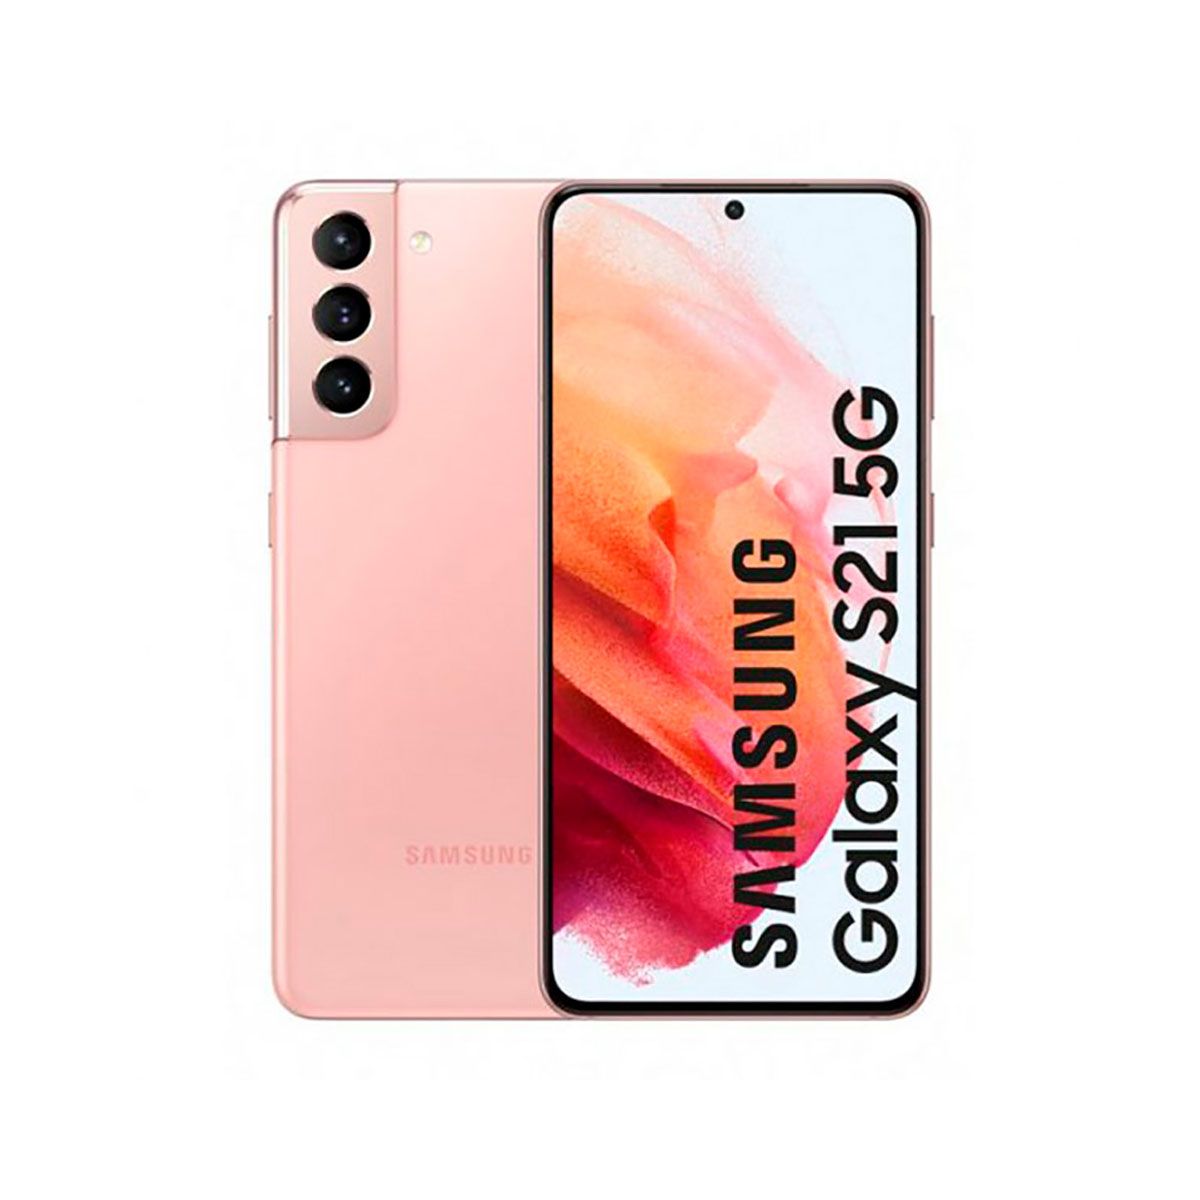 Samsung Galaxy S21 5G 8GB/128GB Gray (Phantom Gray) Dual SIM G991